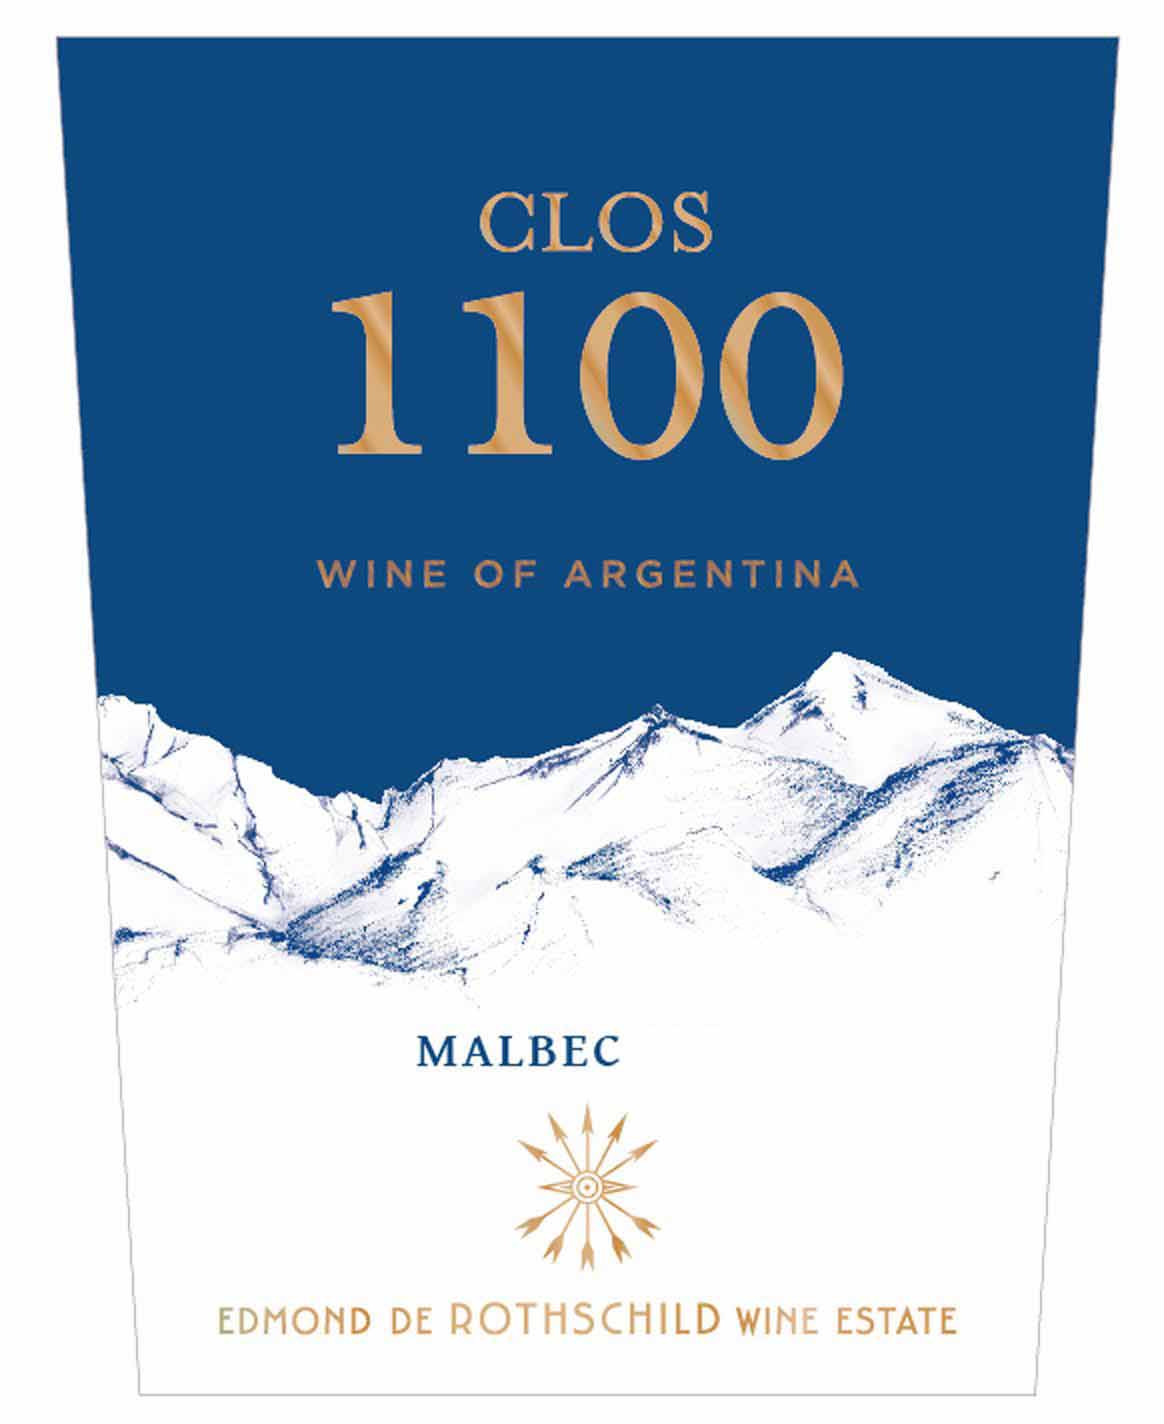 Baron Edmond de Rothschild - Clos 1100 - Malbec label